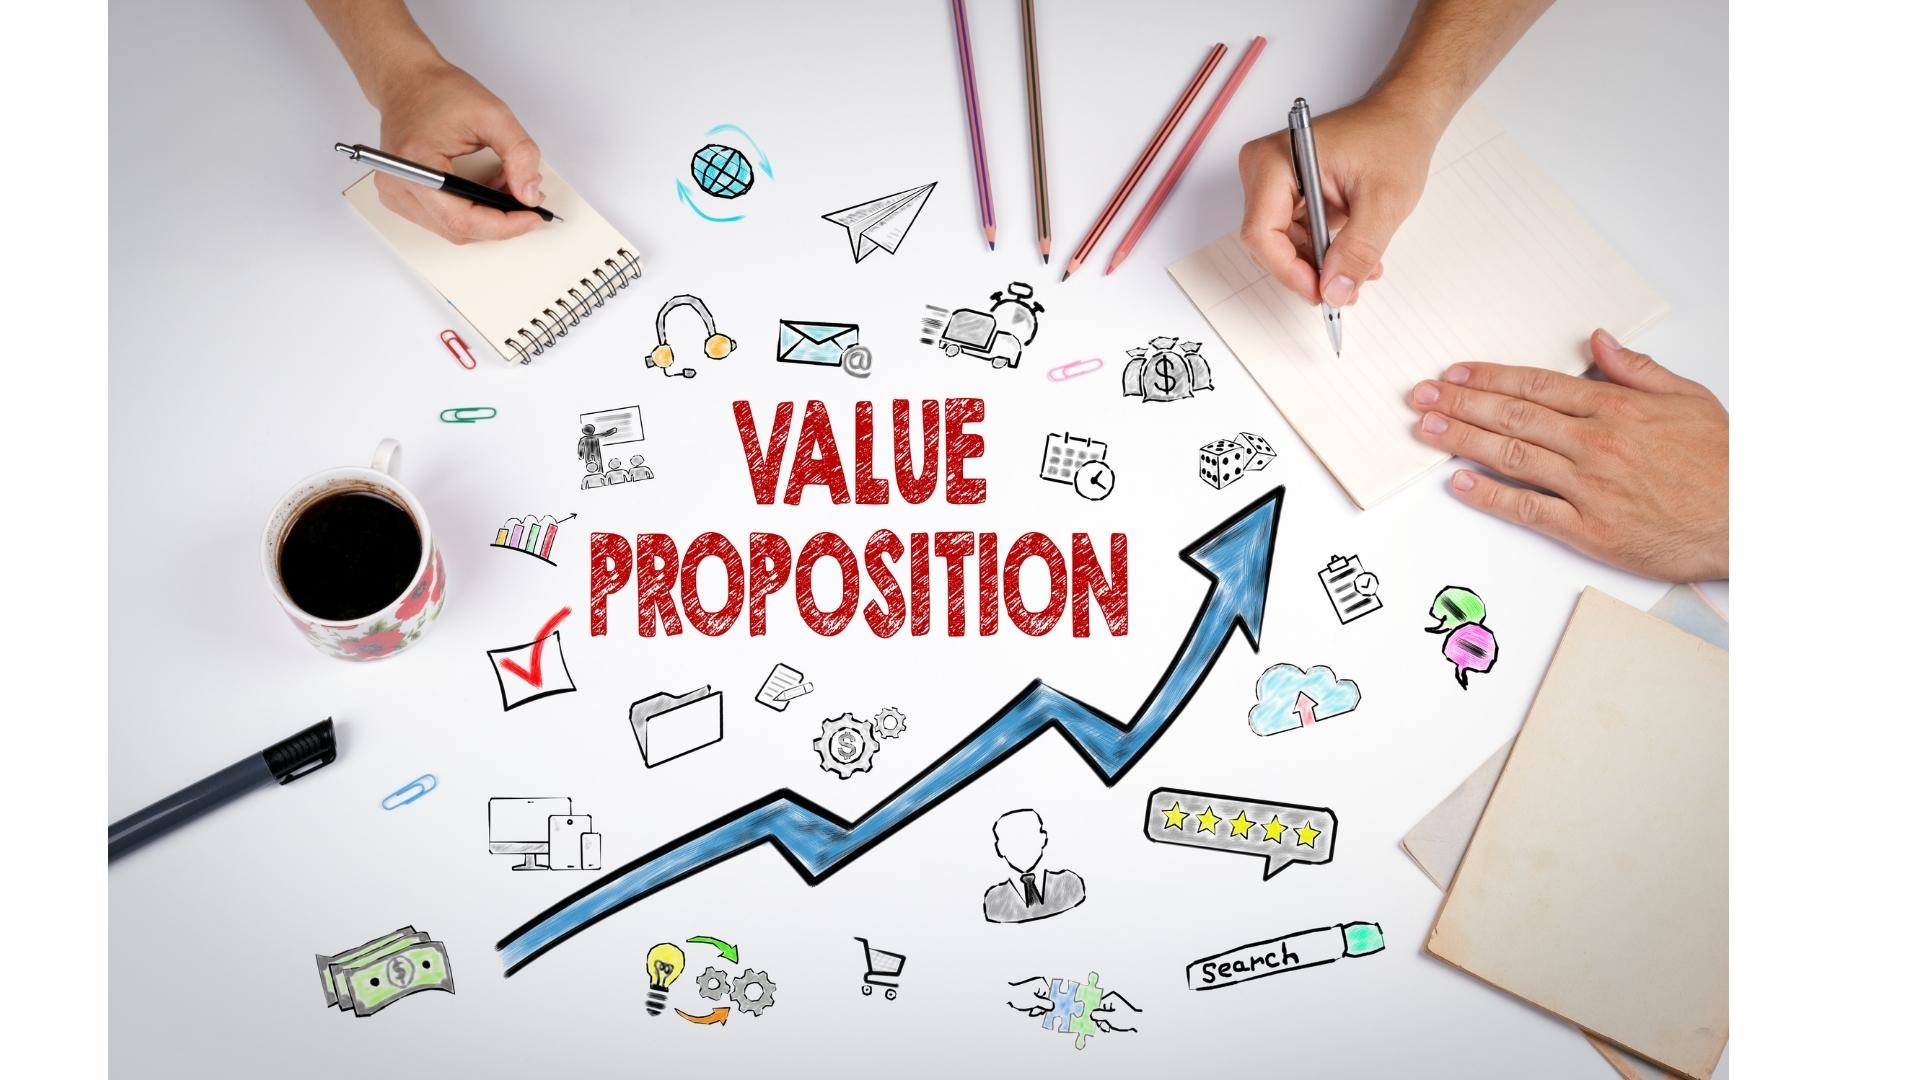 Establish your Unique Value Proposition